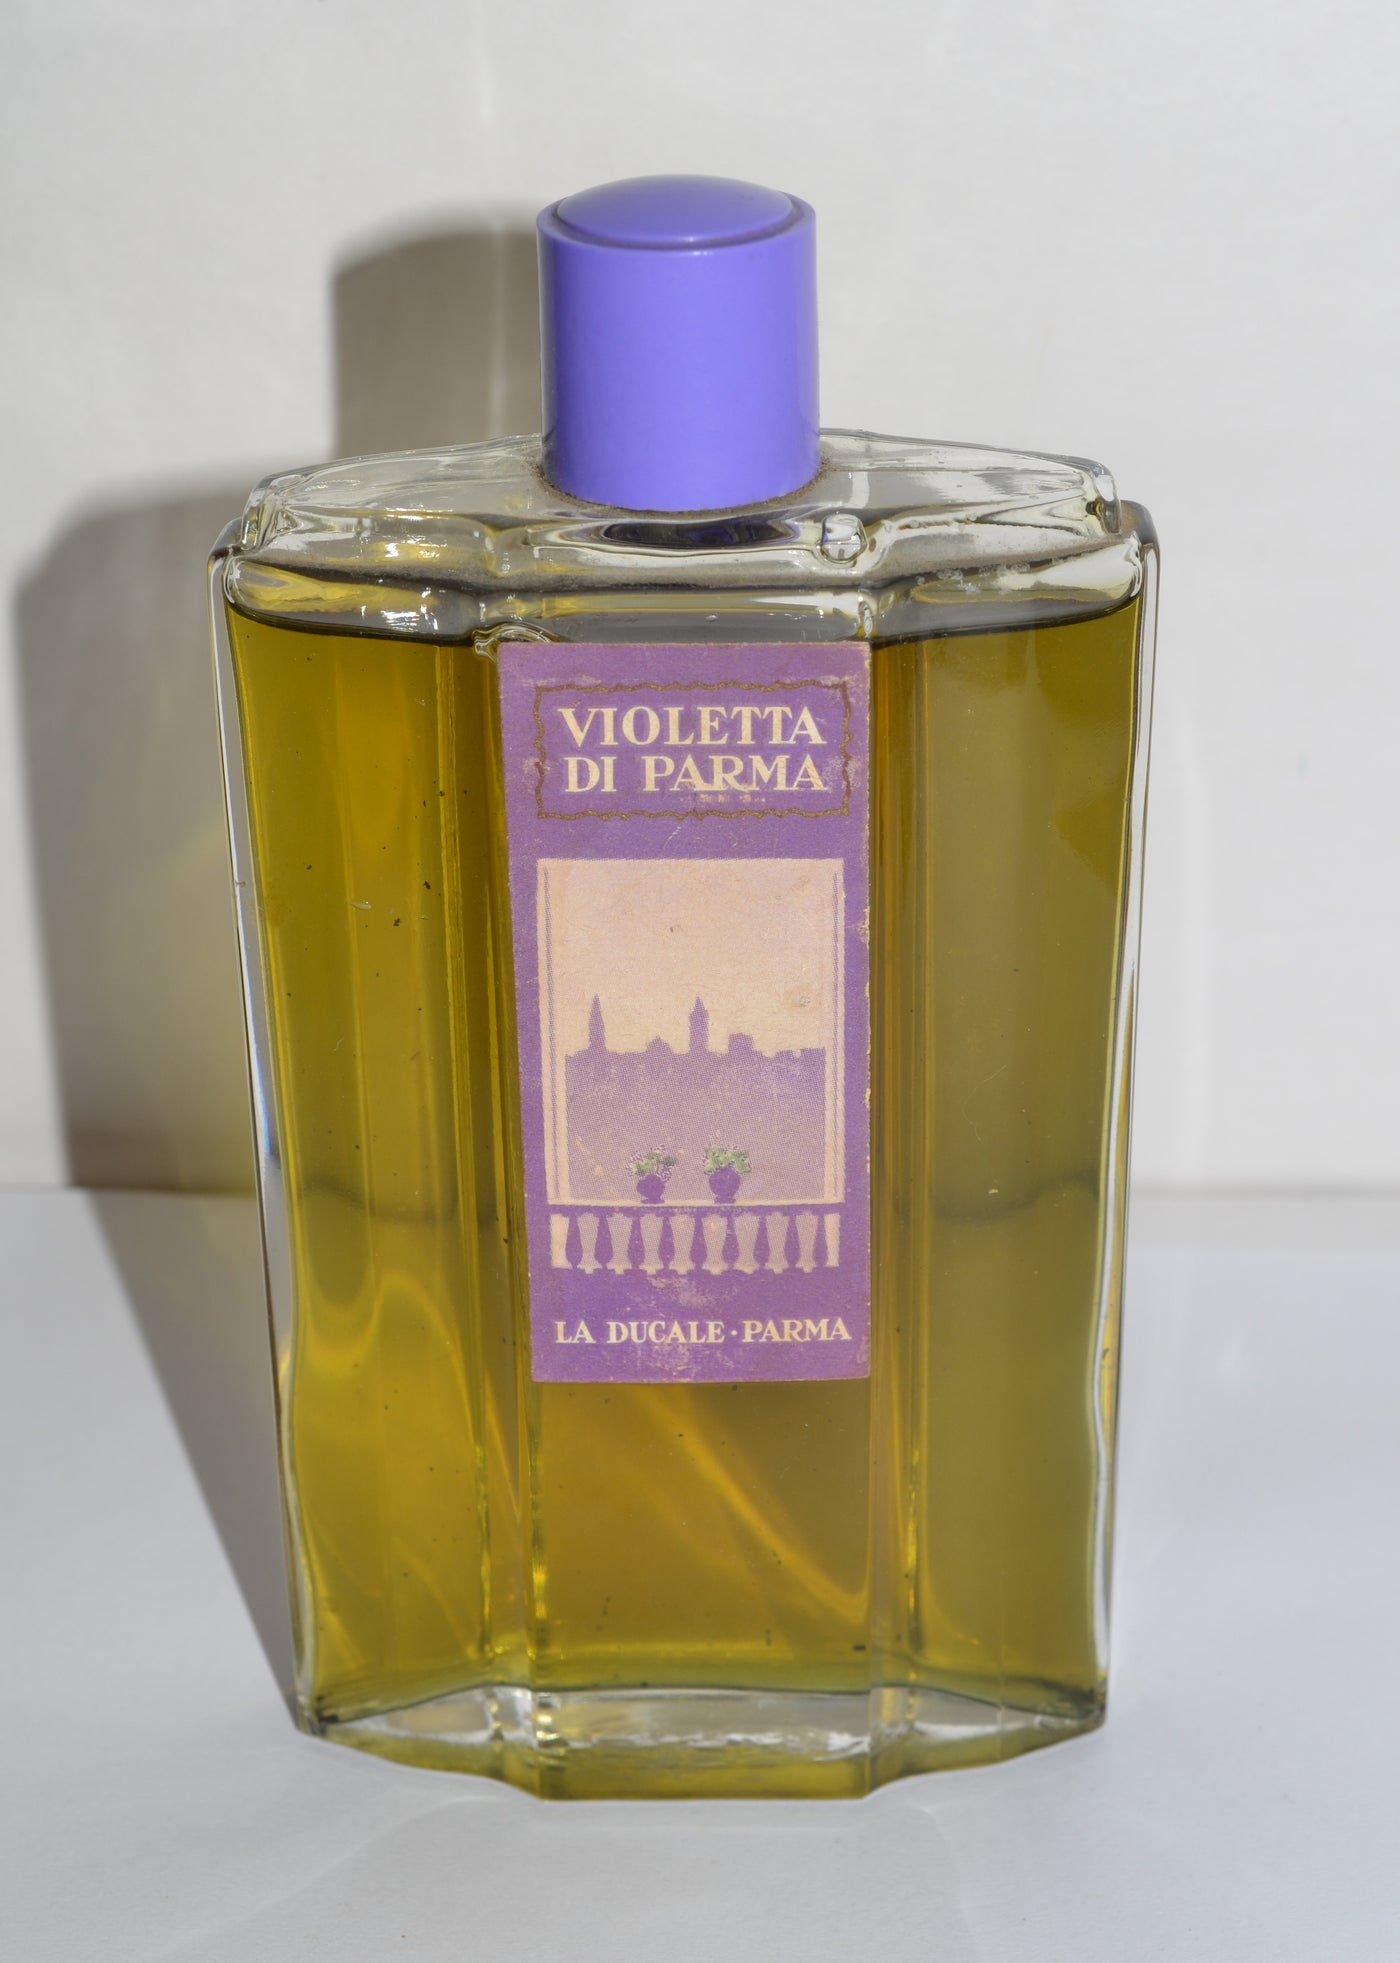 Violetta Di Parma Perfume By La Ducale